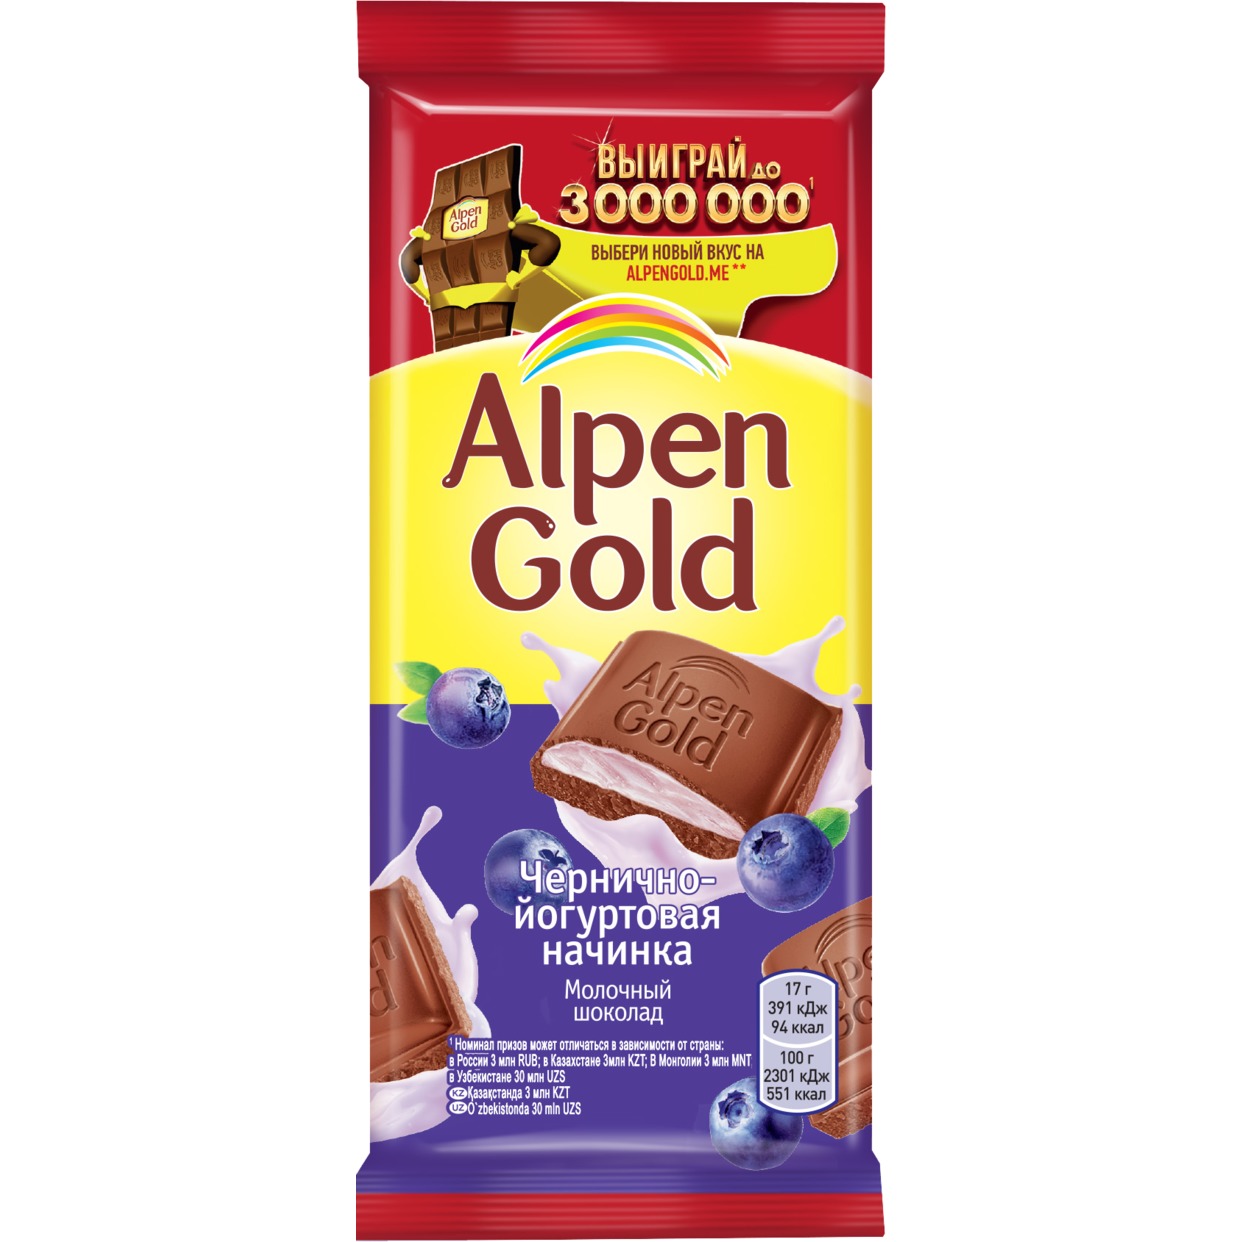 Шоколад молочный Alpen Gold Альпен Гольд с чернично-йогуртовой начинкой, 85г по акции в Пятерочке